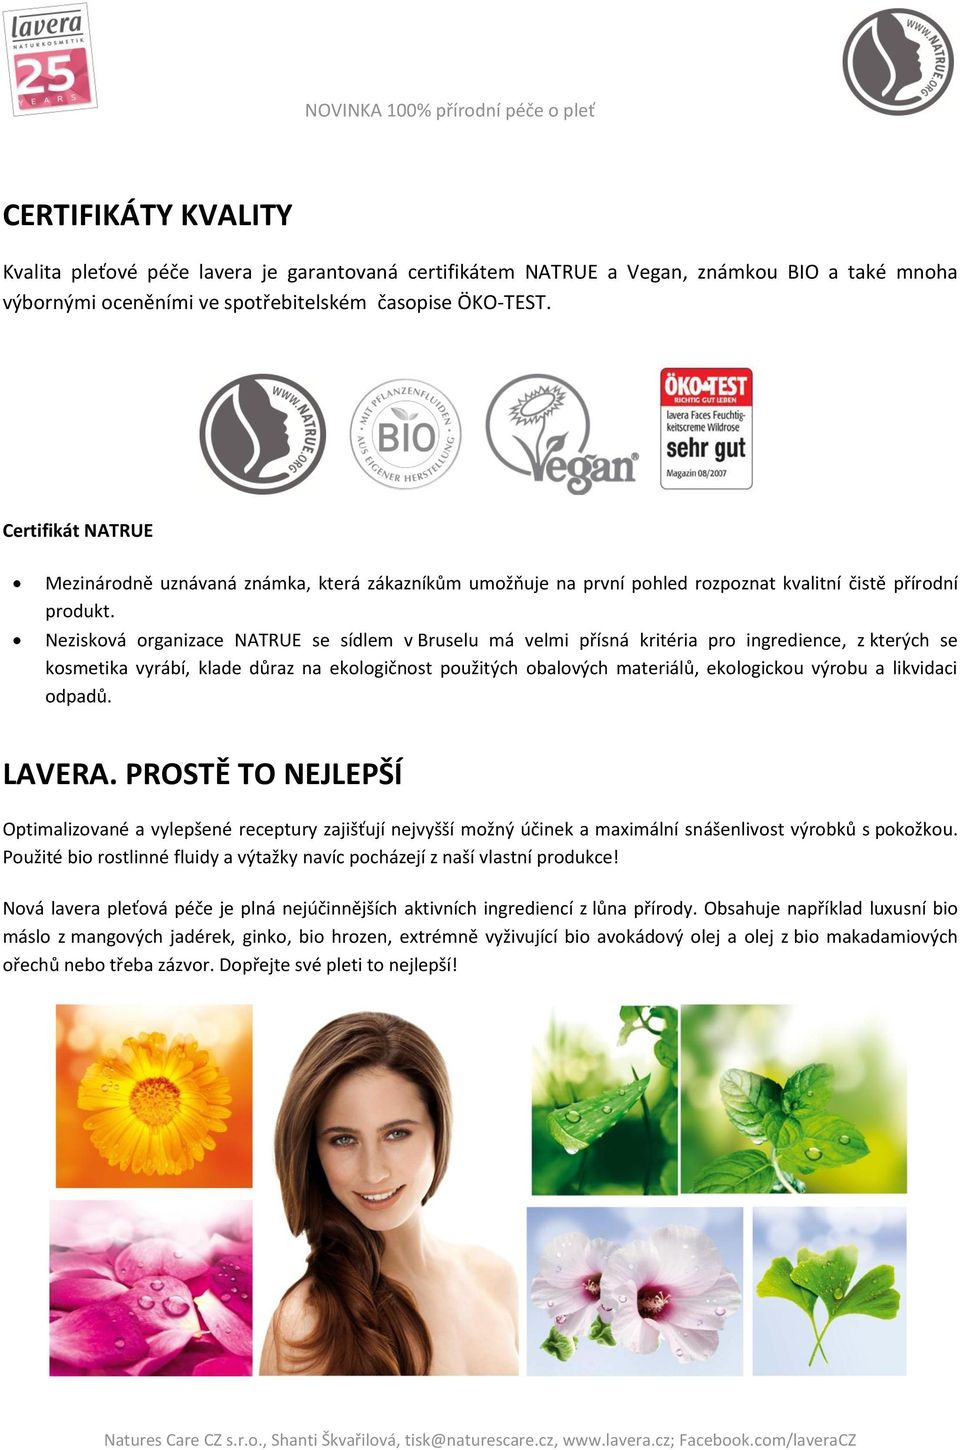 Nezisková organizace NATRUE se sídlem v Bruselu má velmi přísná kritéria pro ingredience, z kterých se kosmetika vyrábí, klade důraz na ekologičnost použitých obalových materiálů, ekologickou výrobu